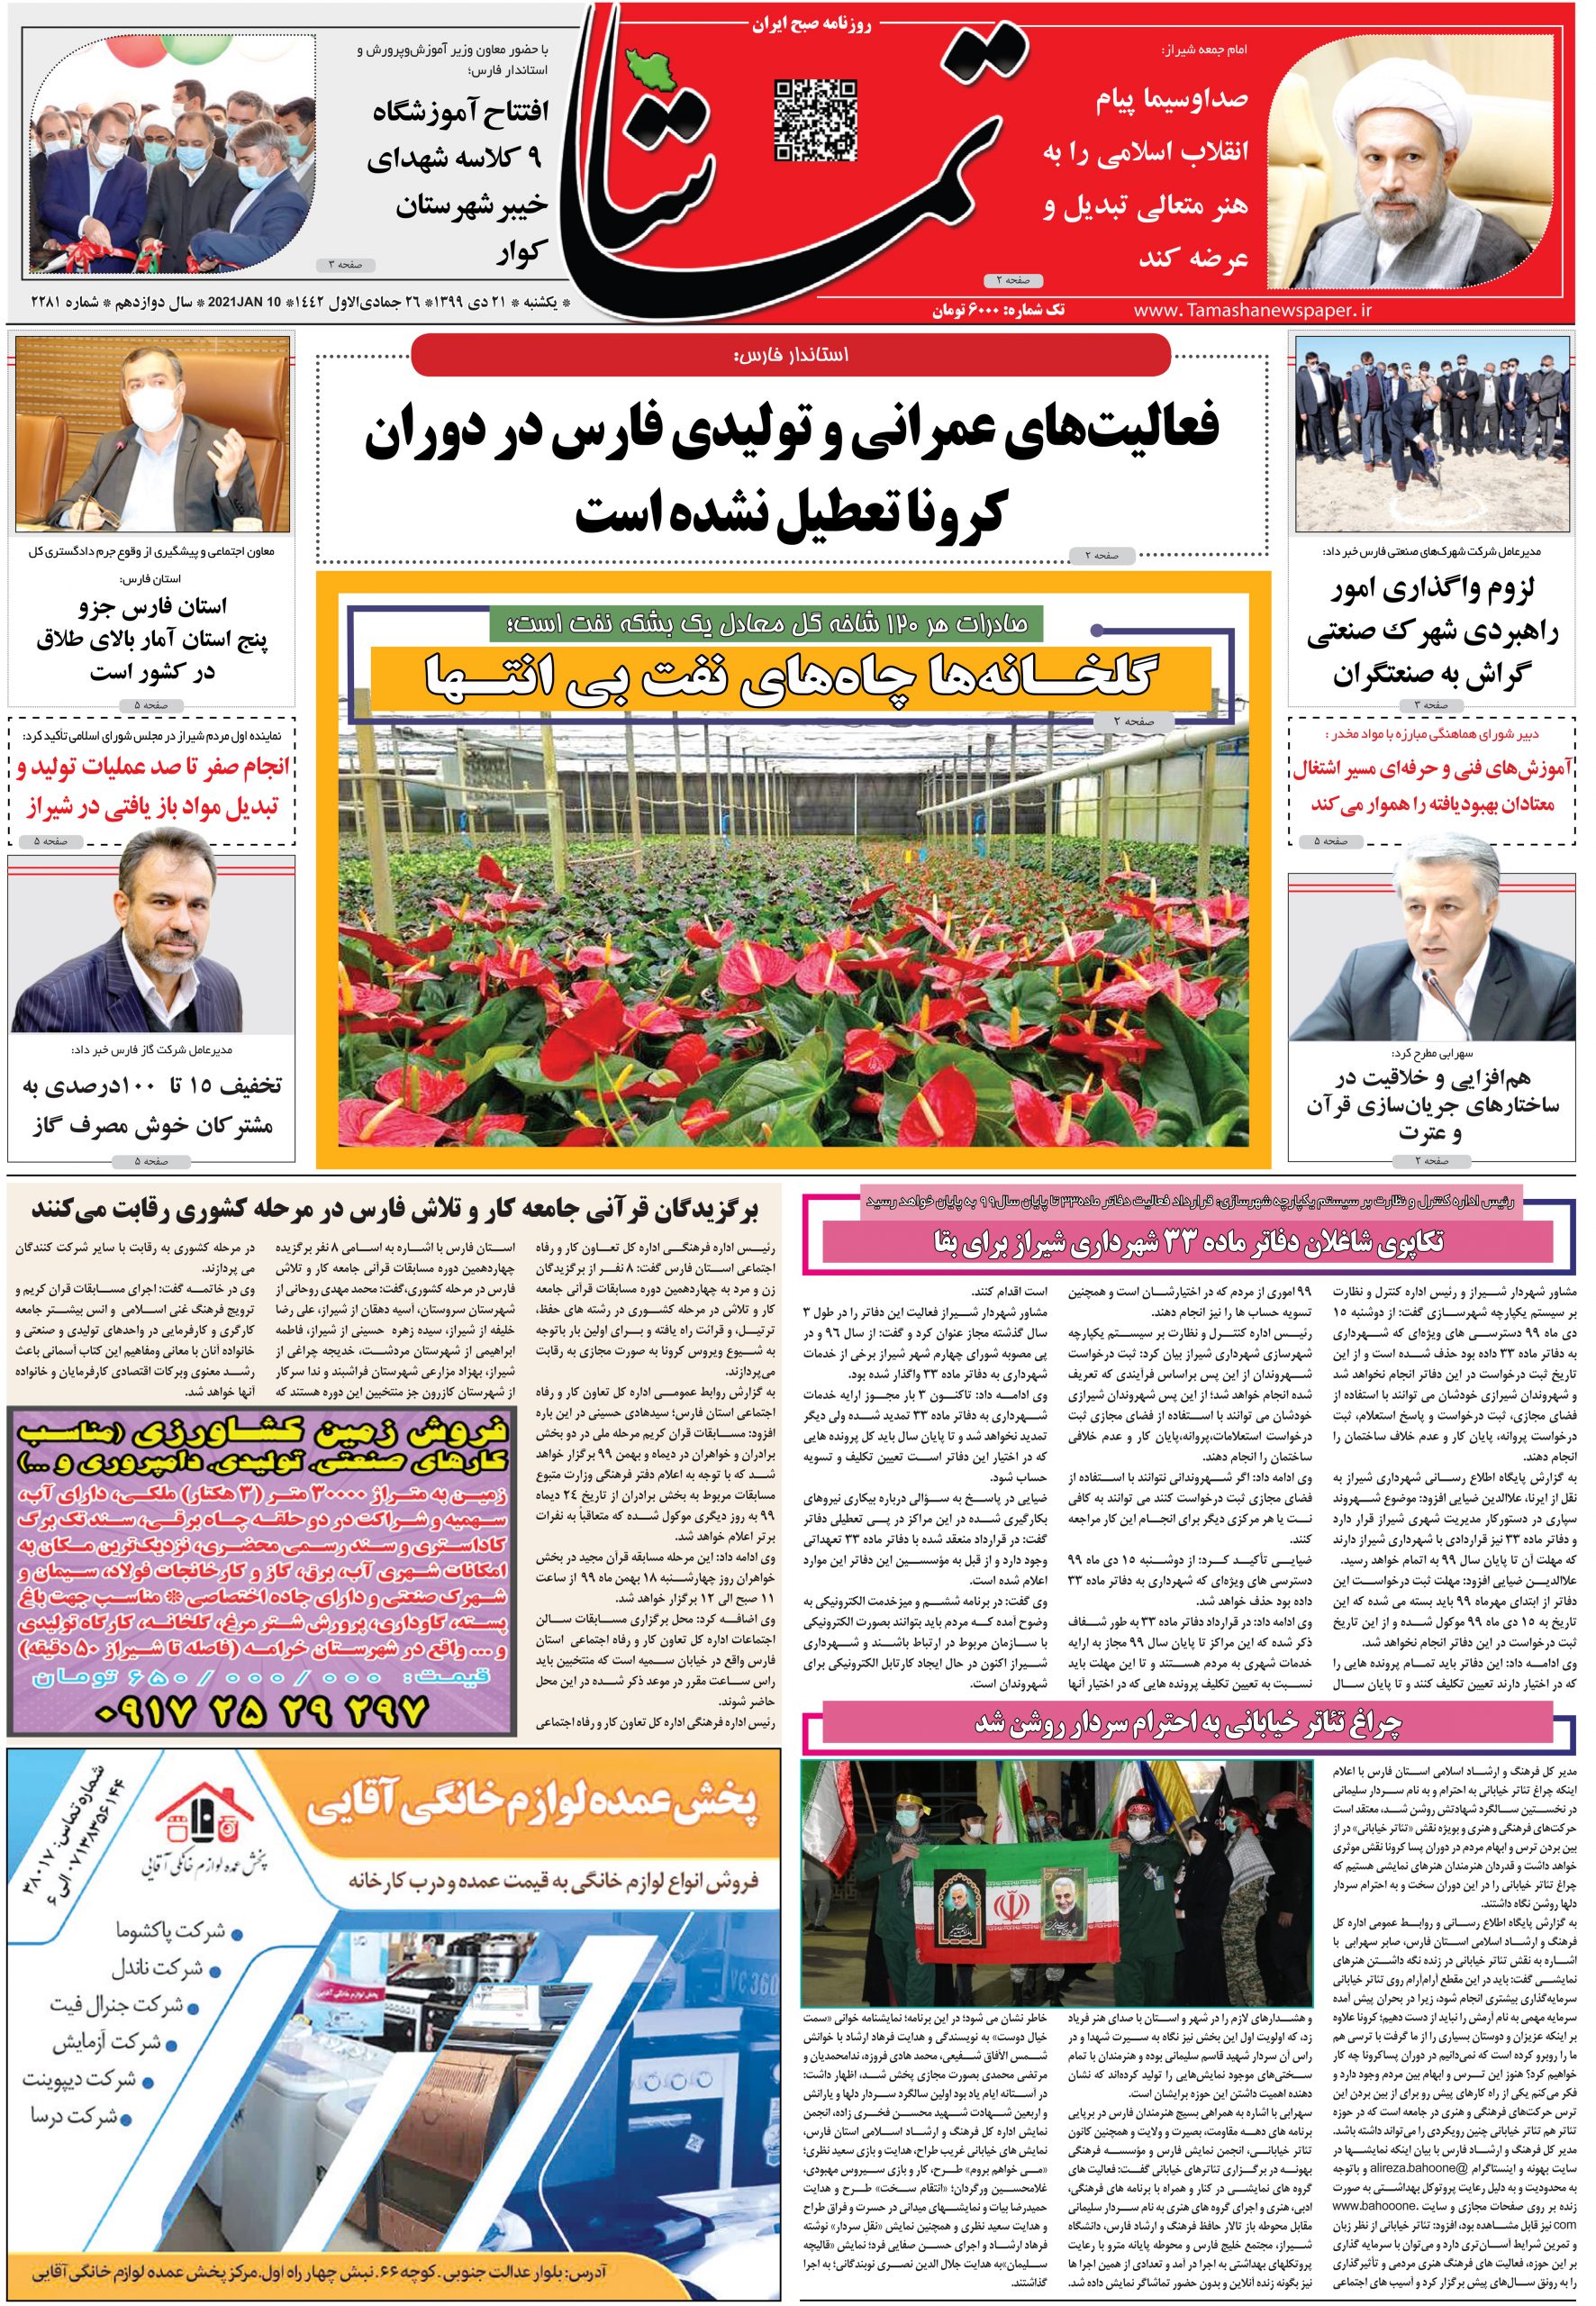 انعکاس خبر افتتاحیه مدرسه خیرساز در روزنامه تماشا مورخ یکشنبه ۲۱ دی ماه ۹۹